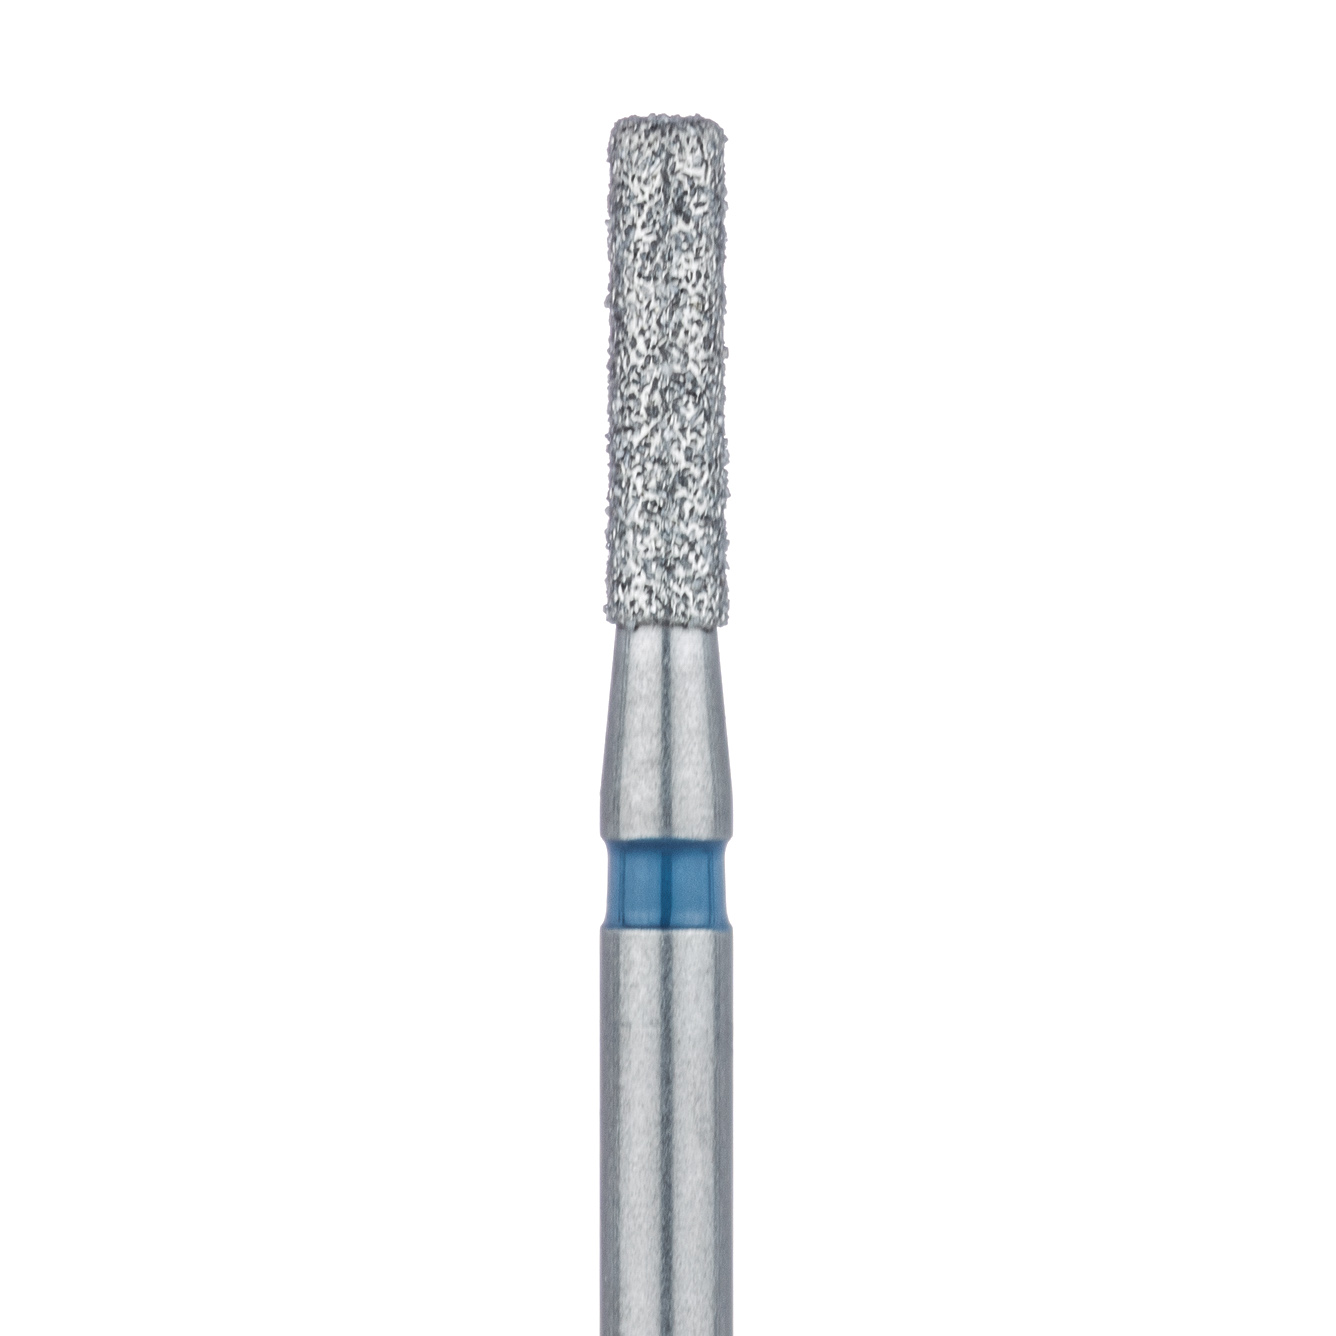 841-014-FG Round Edge Long Cylinder Diamond Bur, 1.4mm Ø, Medium, FG 